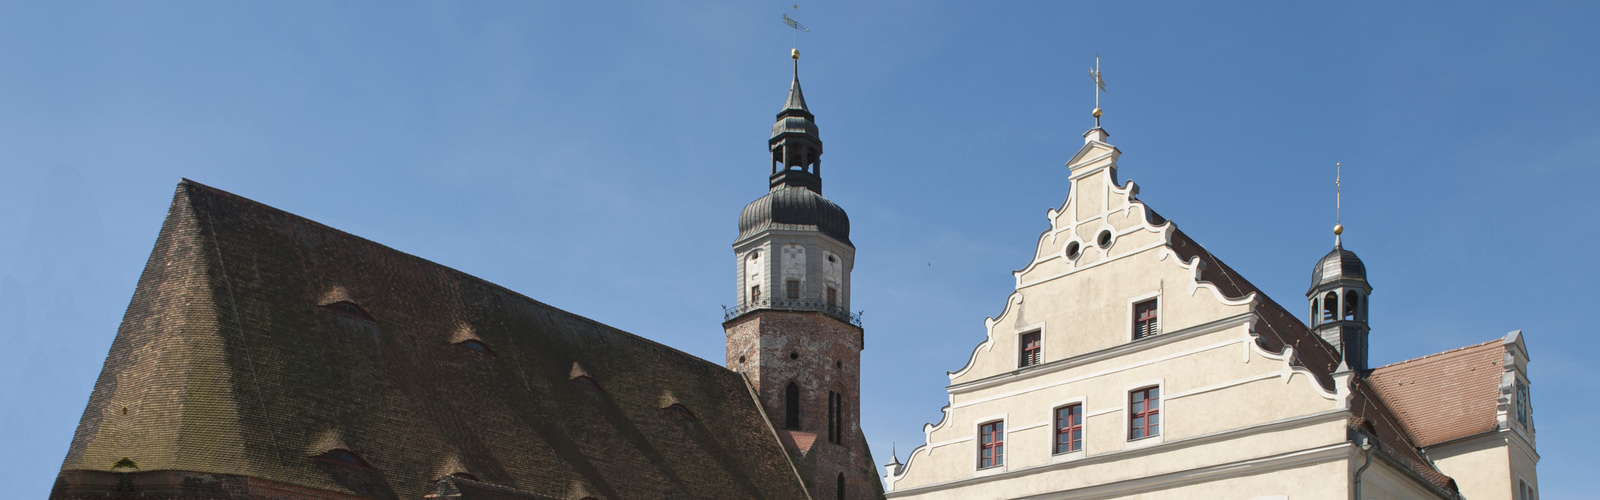 Dächer der Marienkirche und des Rathauses in Herzberg,
        
    

        Foto: AG HIS/Erik-Jan Ouwerkerk